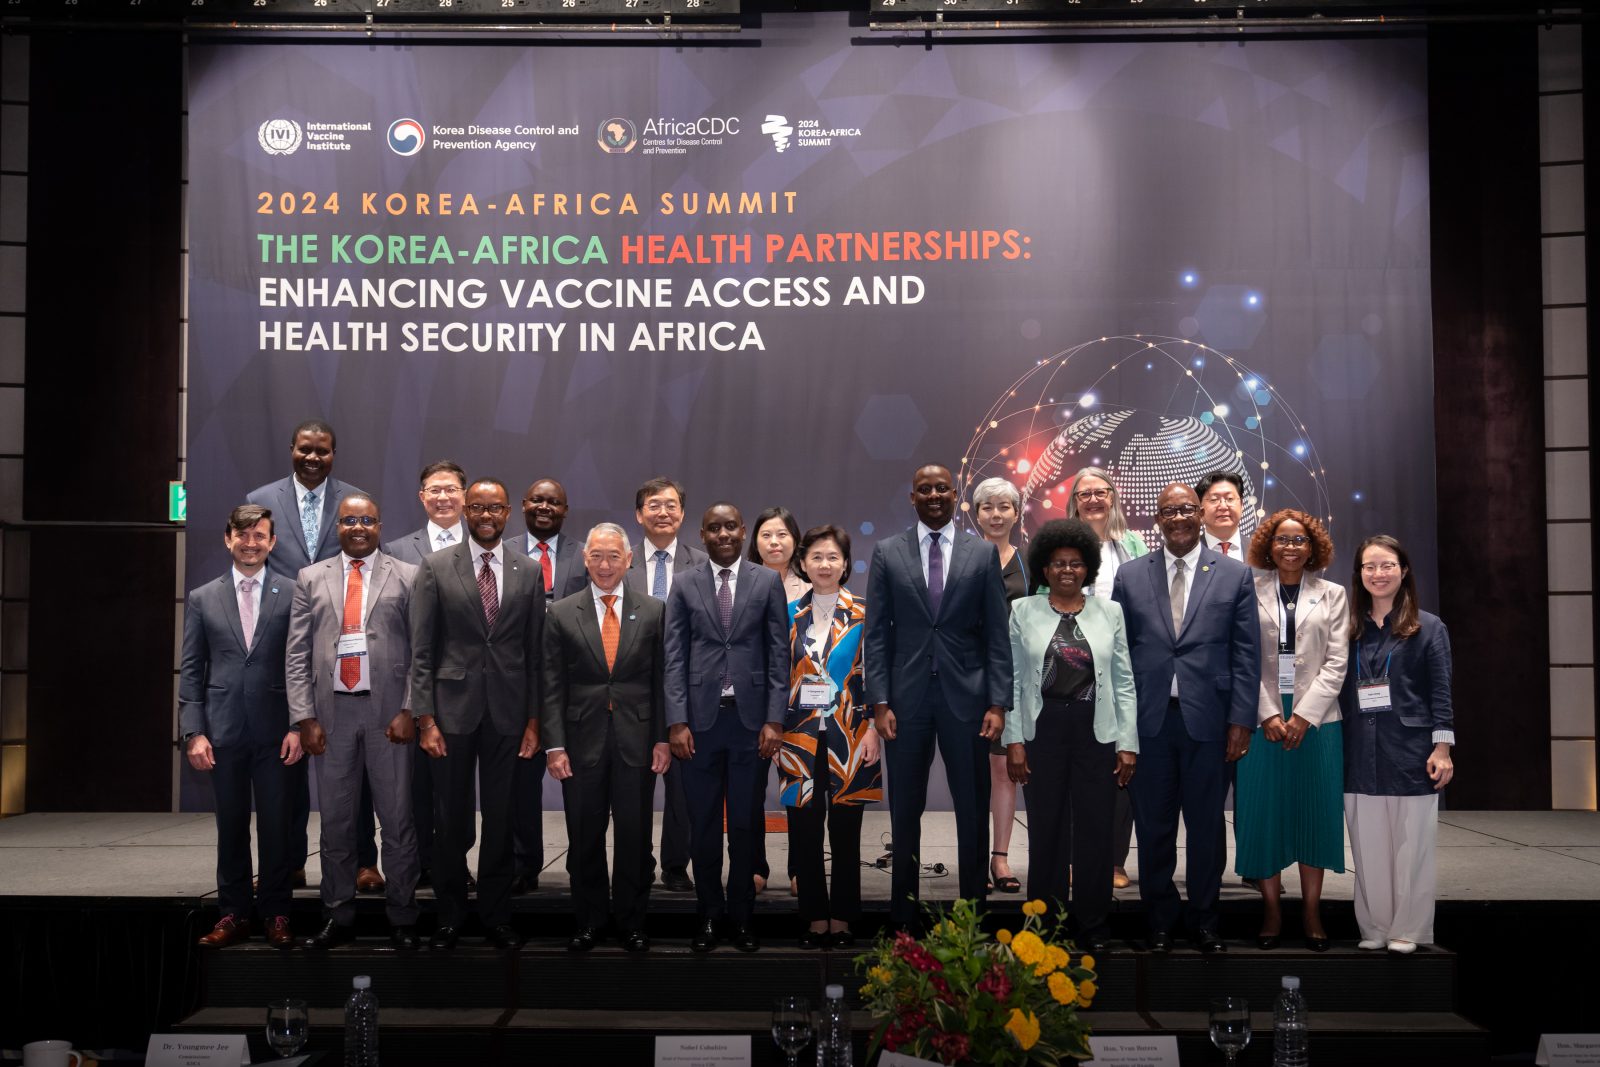 아프리카 CDC, IVI, KDCA가 힘을 합쳐 2024년 한-아프리카 정상회담에서 아프리카의 백신 접근 및 보건 안보를 위한 파트너십 구축